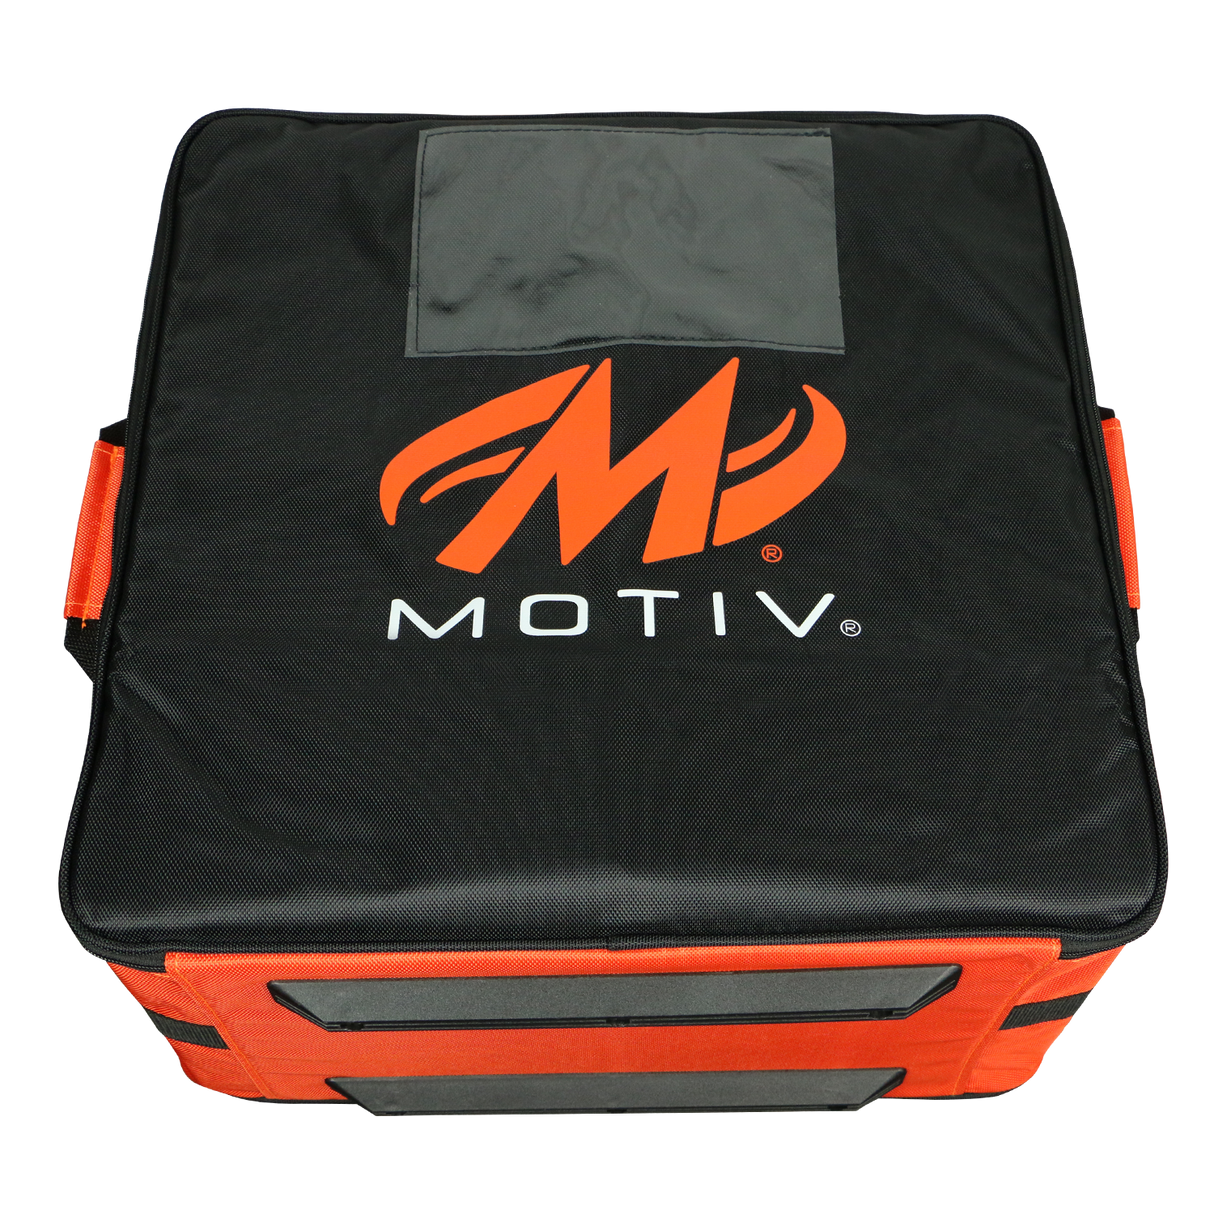 Motiv 4 Ball Box Case Tote Black/Orange Bowling Bag suitcase league tournament play sale discount coupon online pba tour